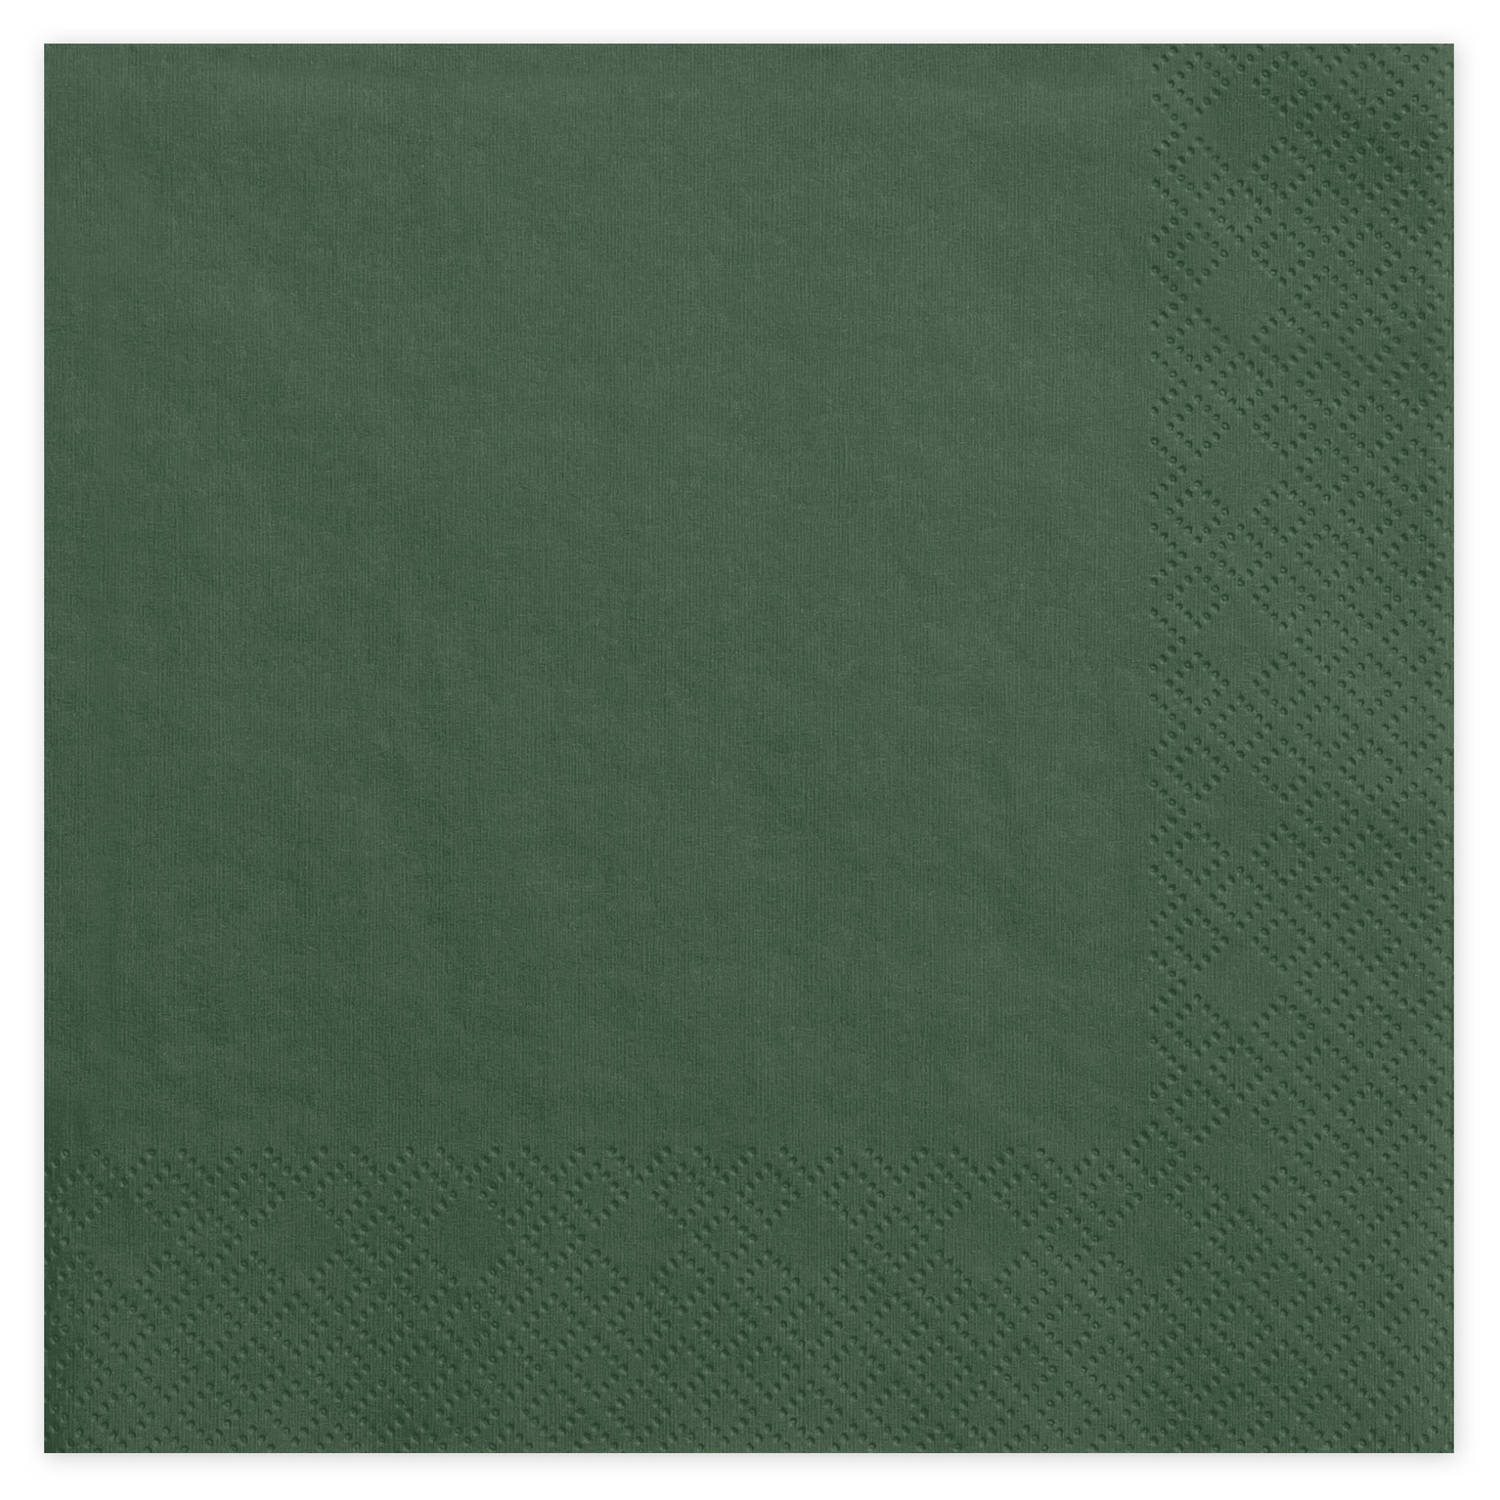 40x Papieren tafel servetten dennen groen 33 x 33 cm - Feestservetten